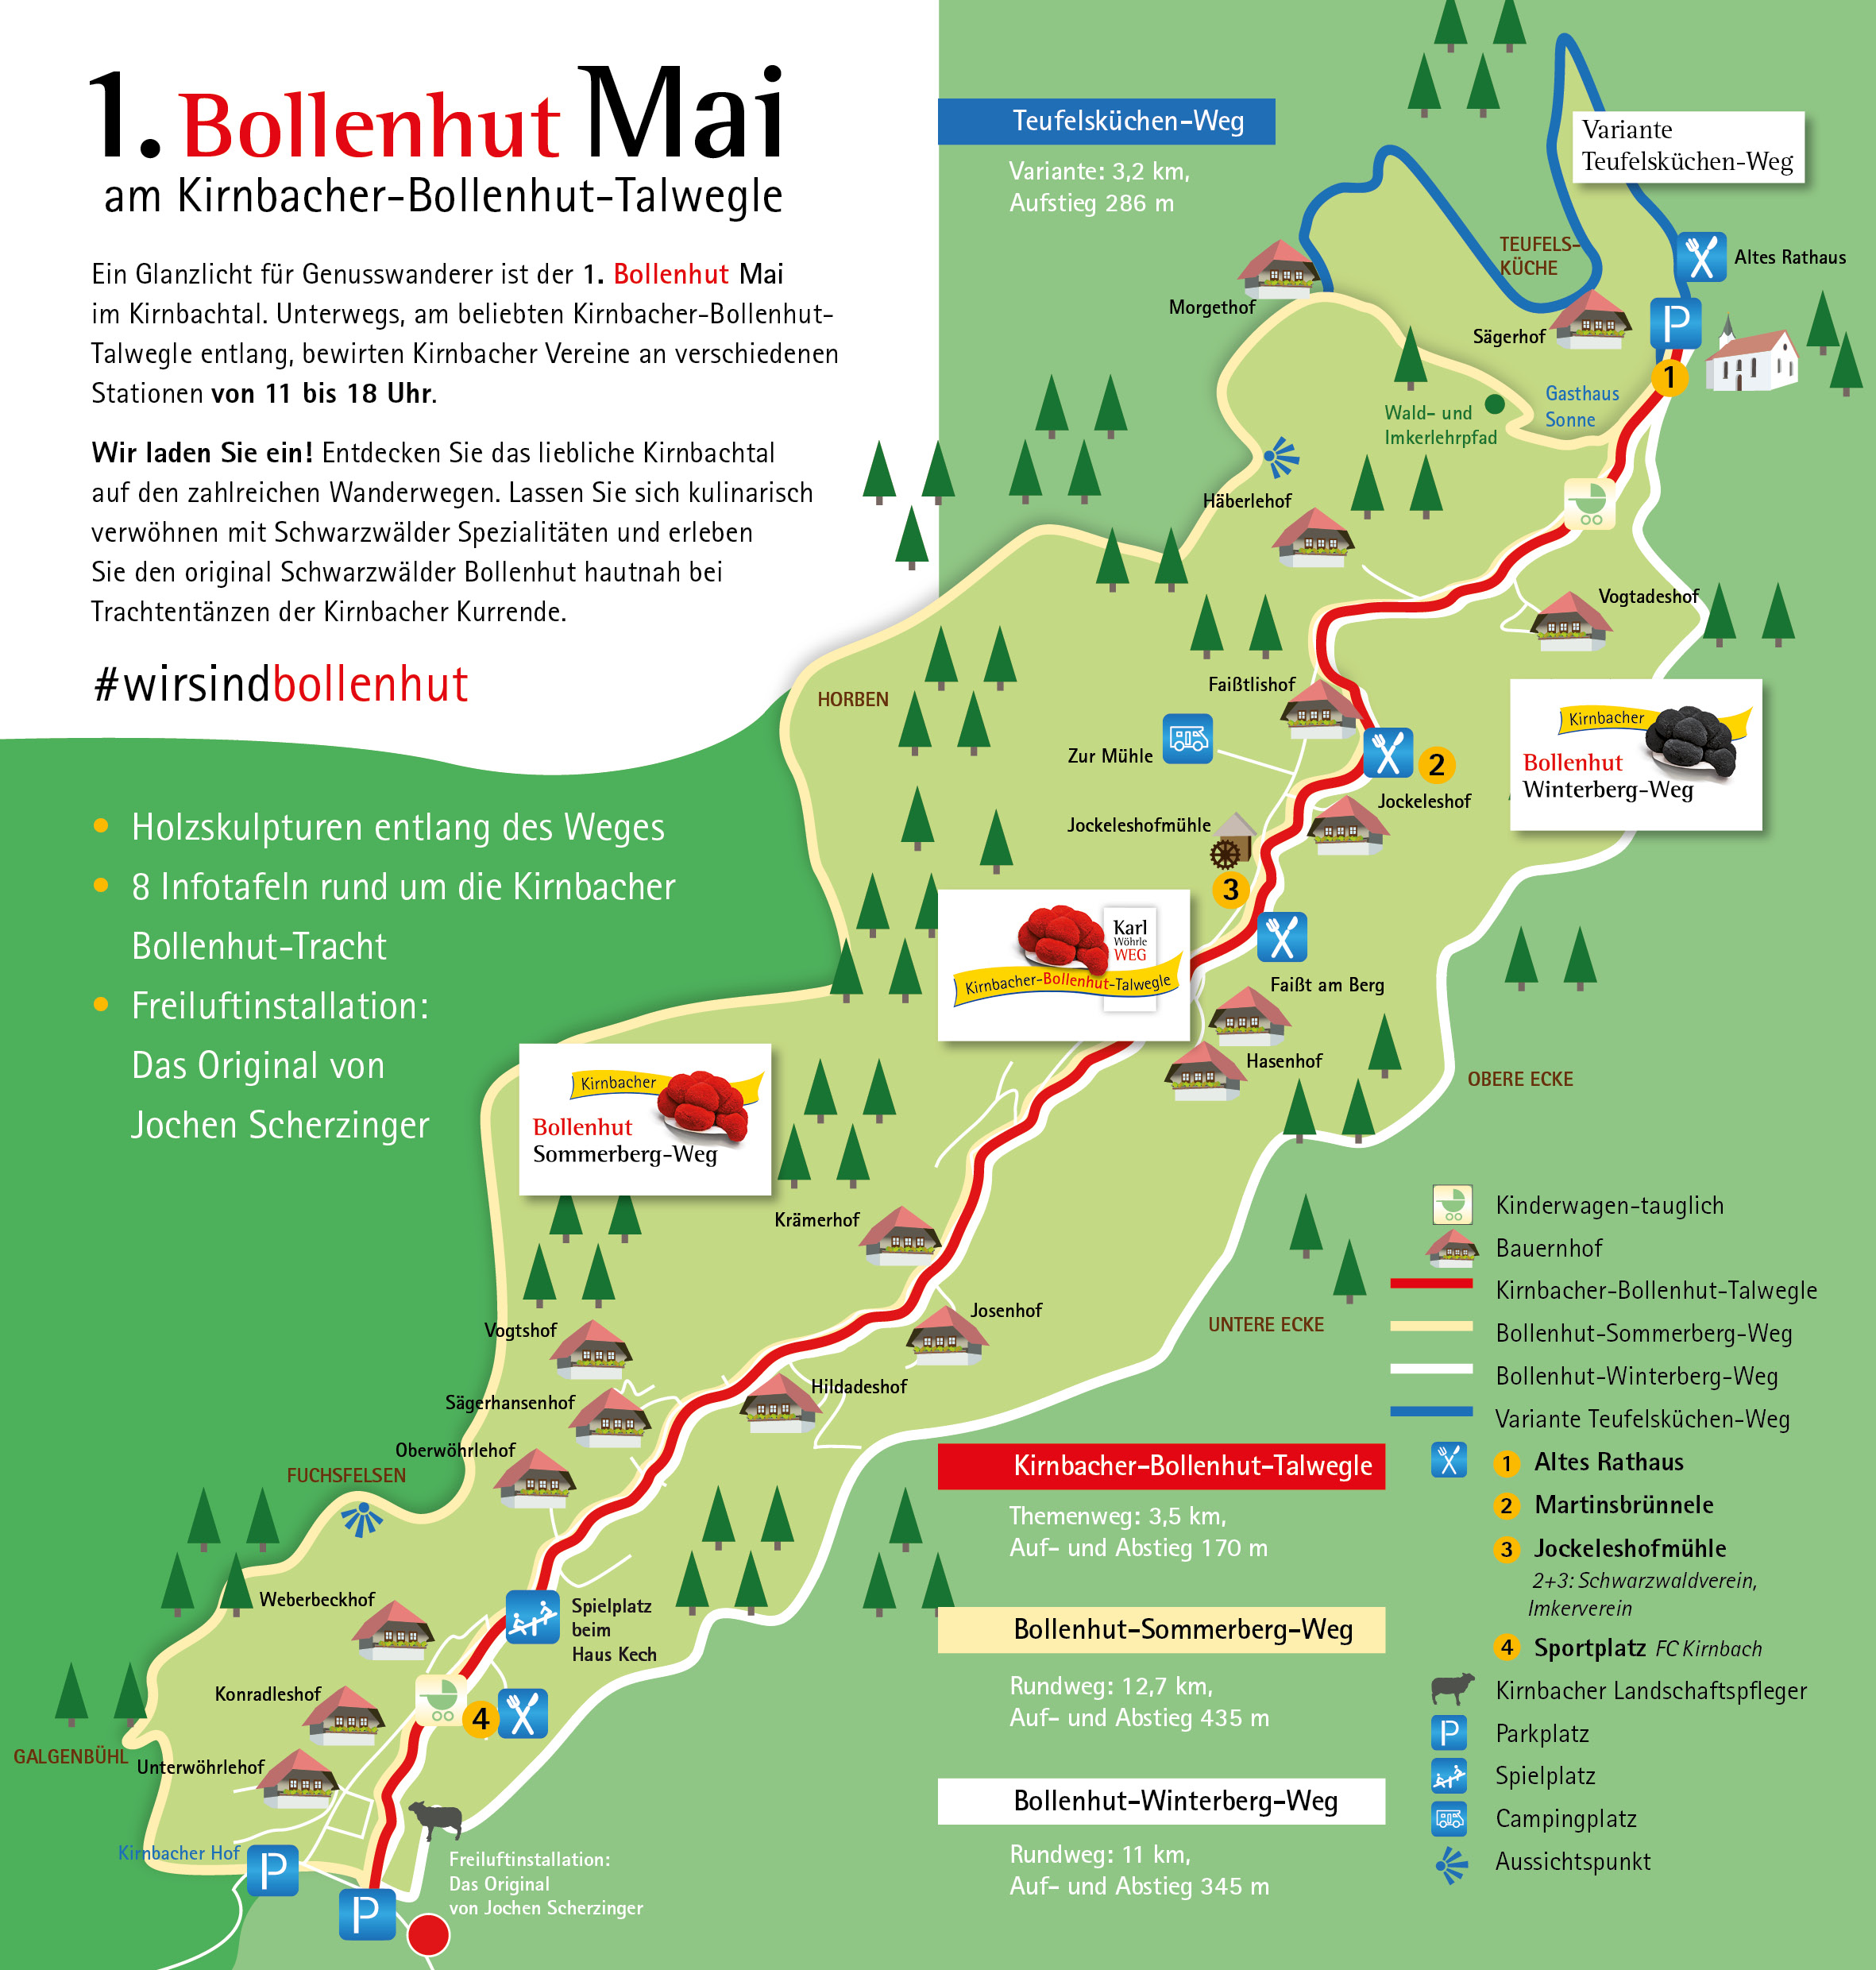 Bollenhut Mai am Kirnbacher-Bollenhut-Talwegle